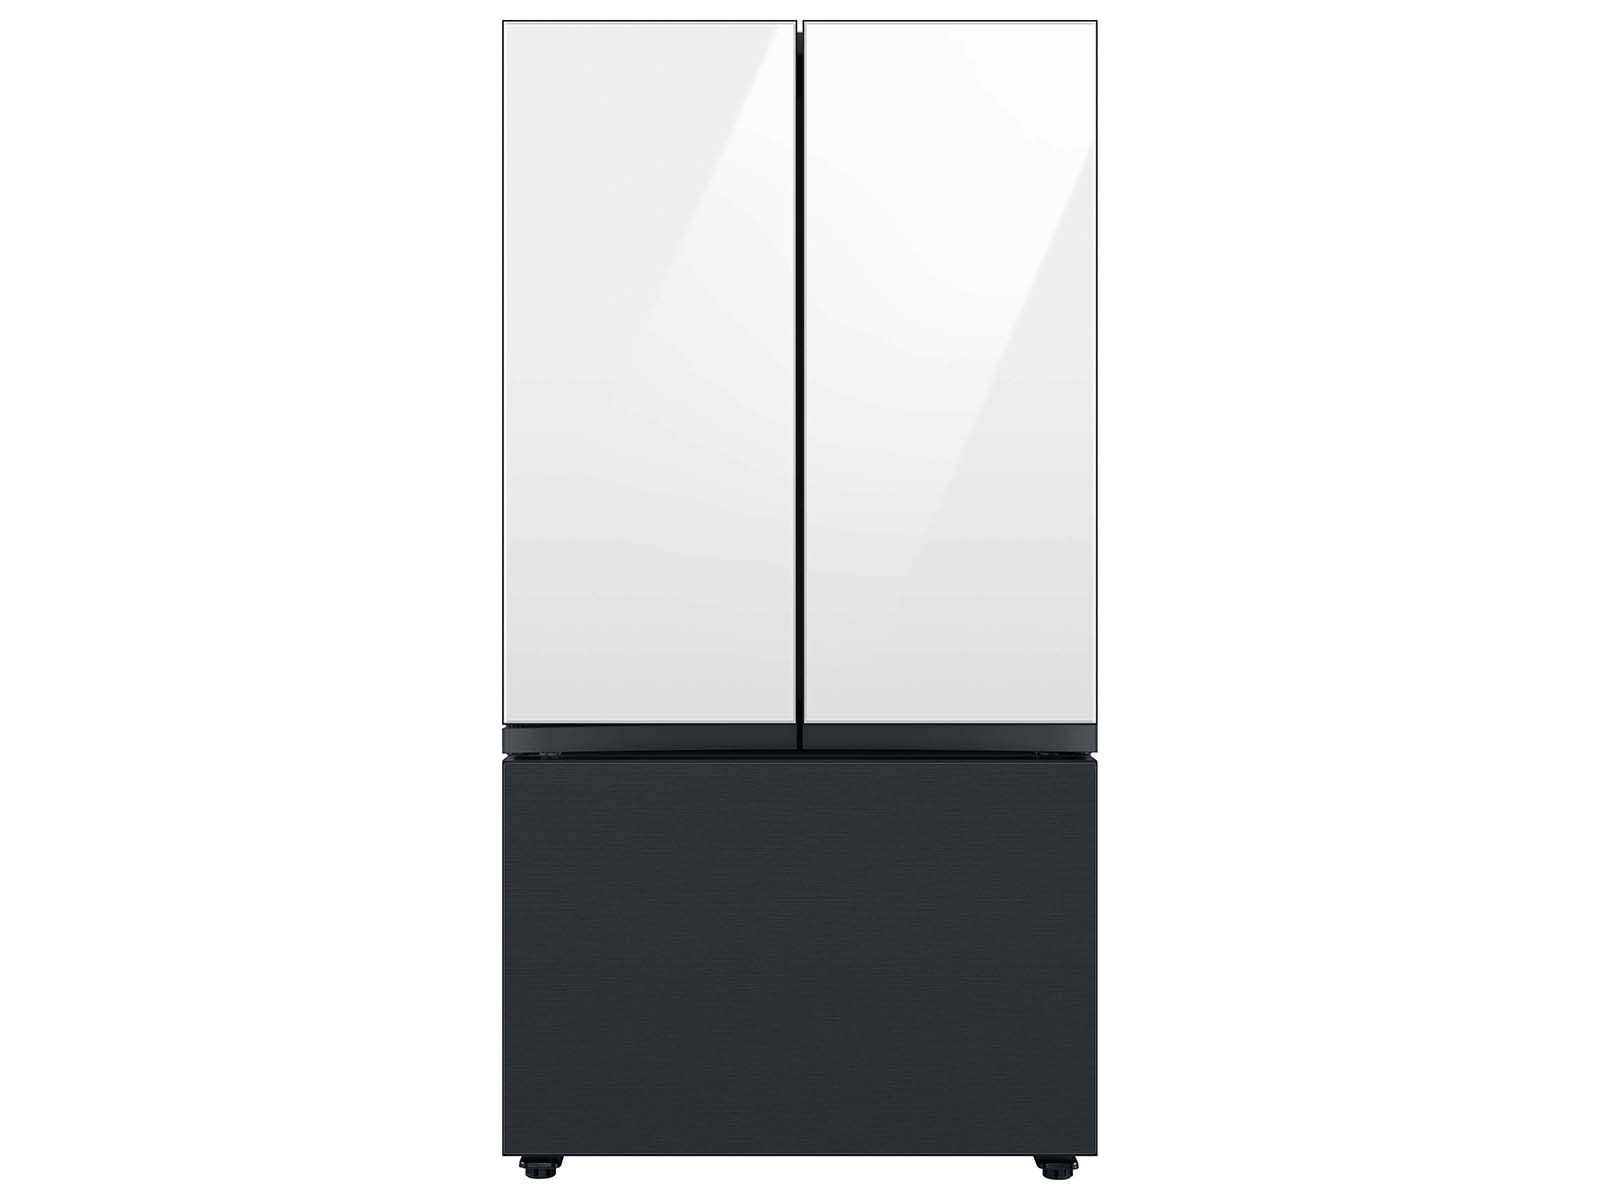 Thumbnail image of Bespoke 3-Door French Door Refrigerator Panel in Matte Black Steel - Bottom Panel